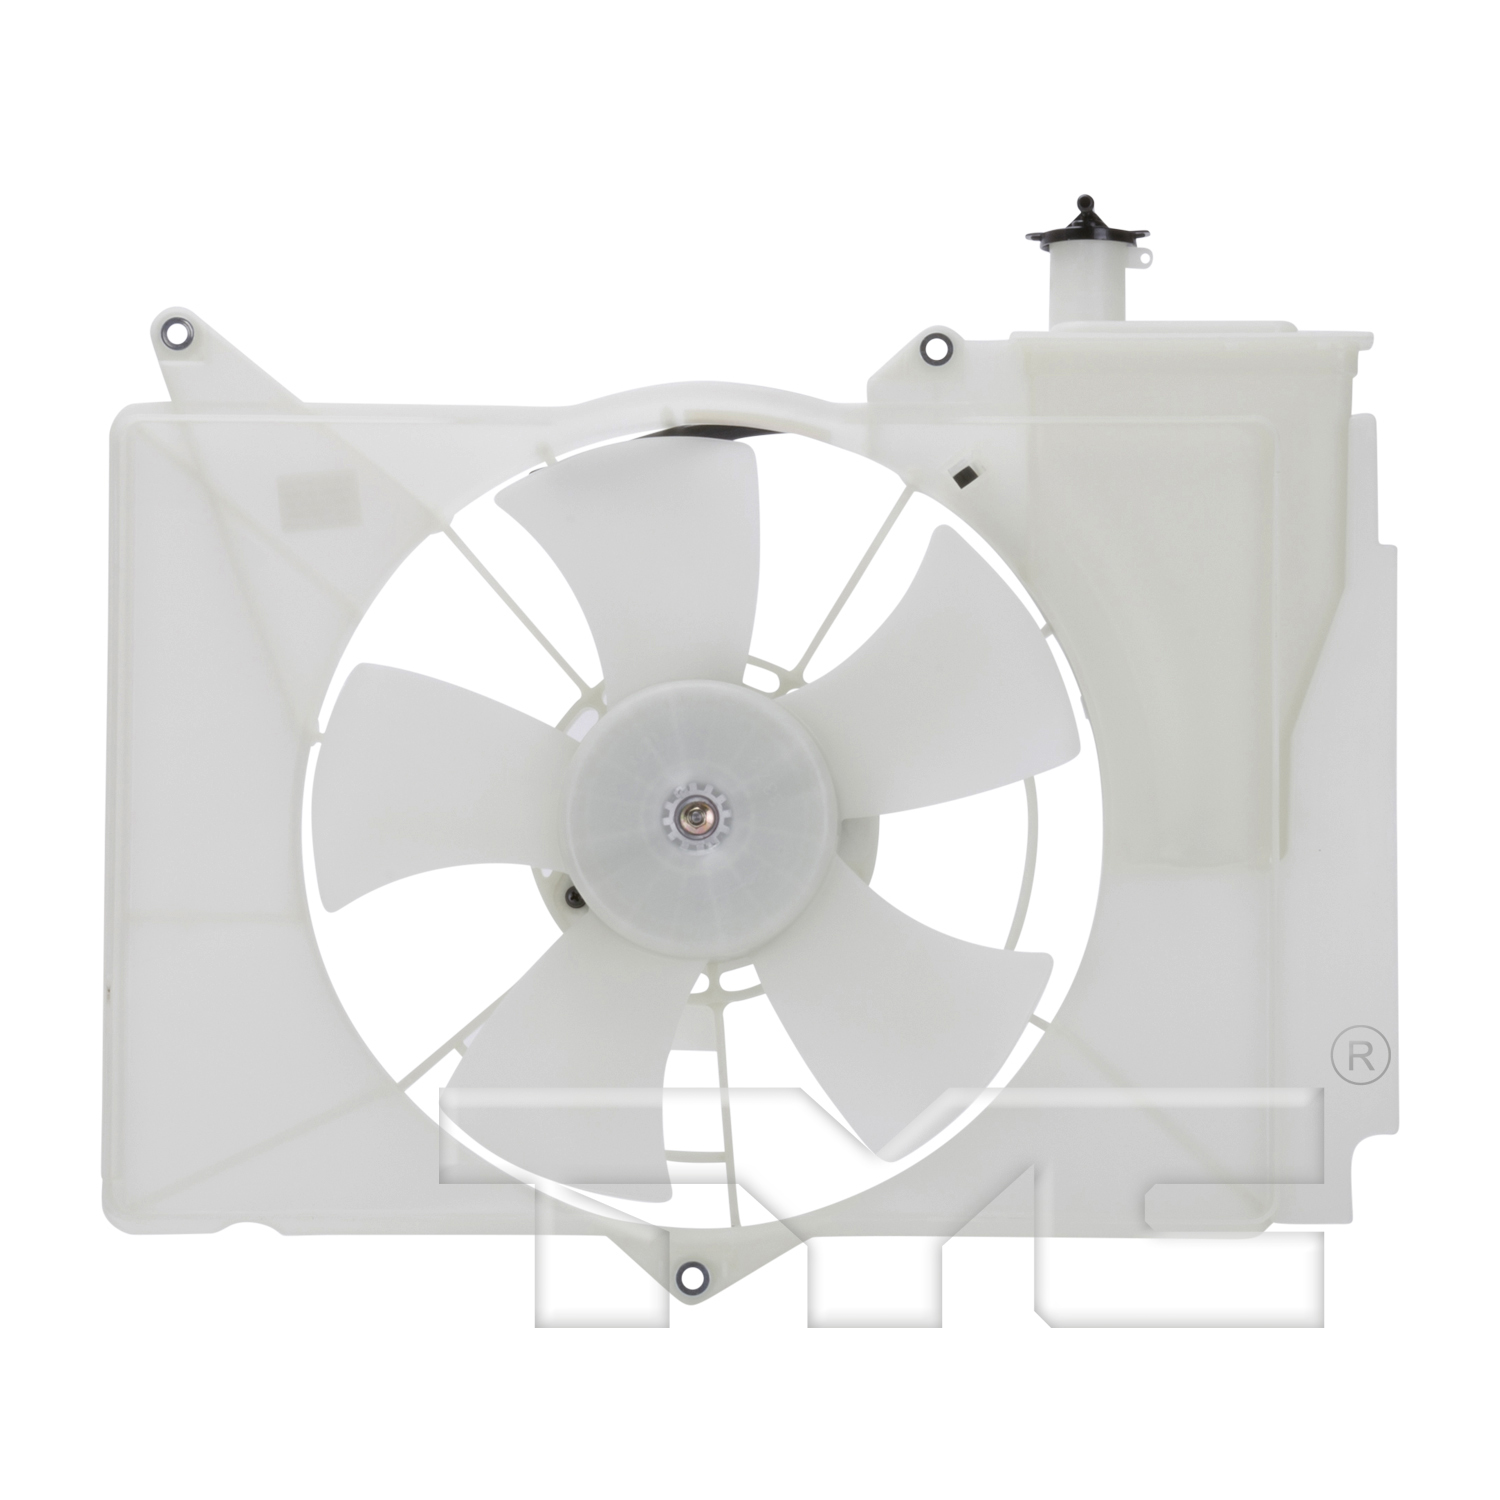 Aftermarket FAN ASSEMBLY/FAN SHROUDS for SCION - XB, xB,04-06,Radiator cooling fan assy